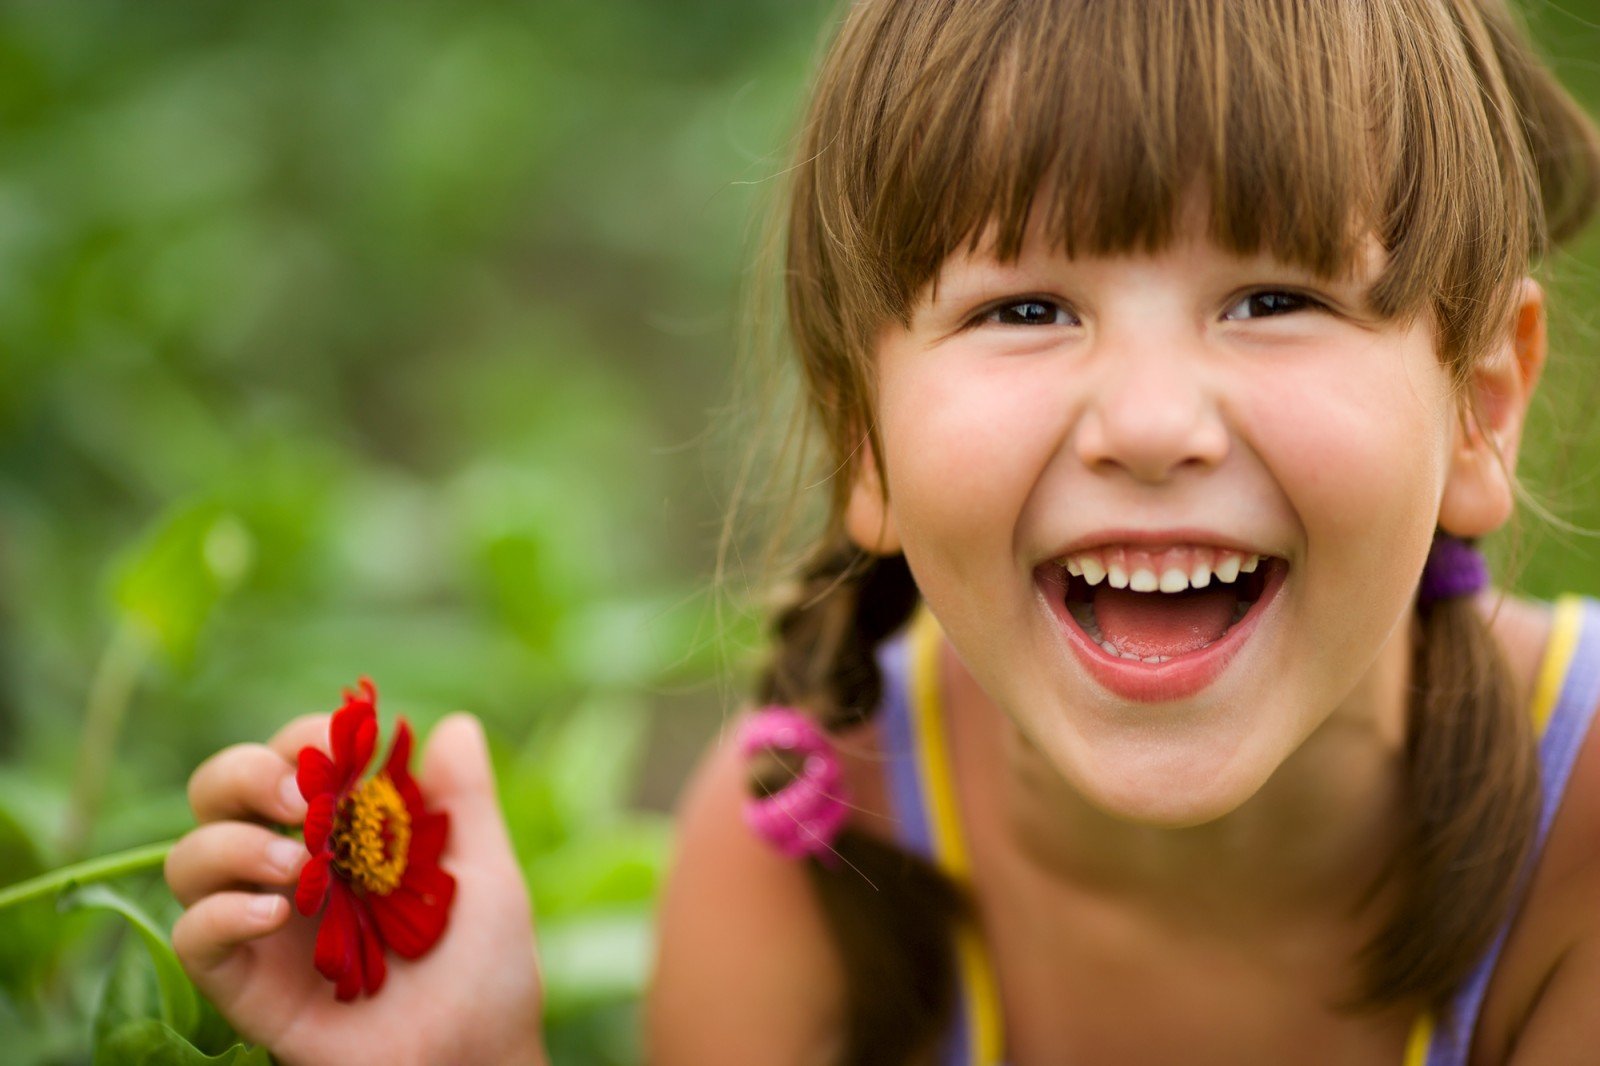 Оптимисты реже болеют: как научить ребенка позитивному взгляду на мир